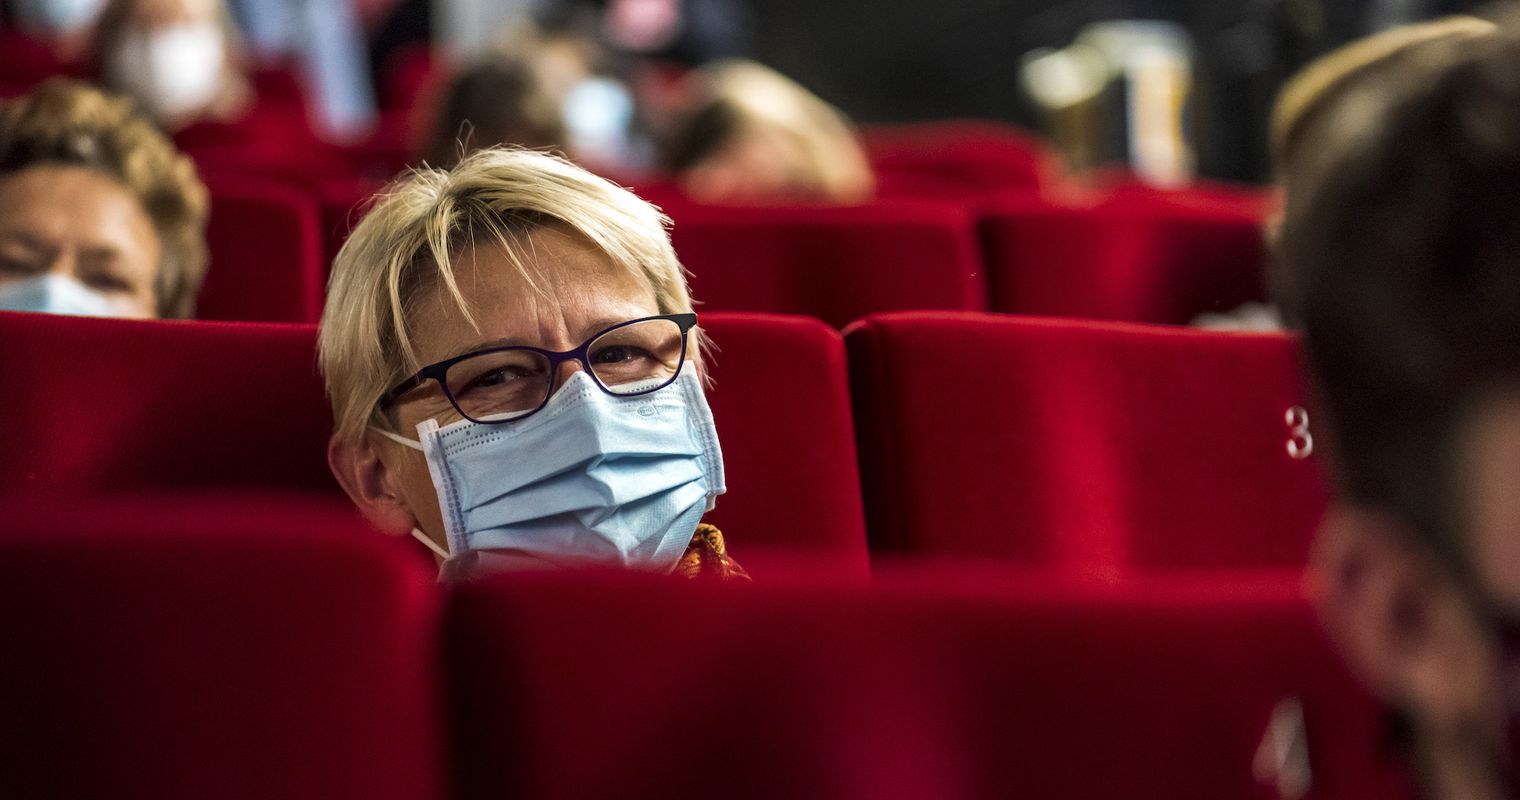 Kinos freuen sich übers Regenwetter – doch Popcorn und Cüpli fehlen